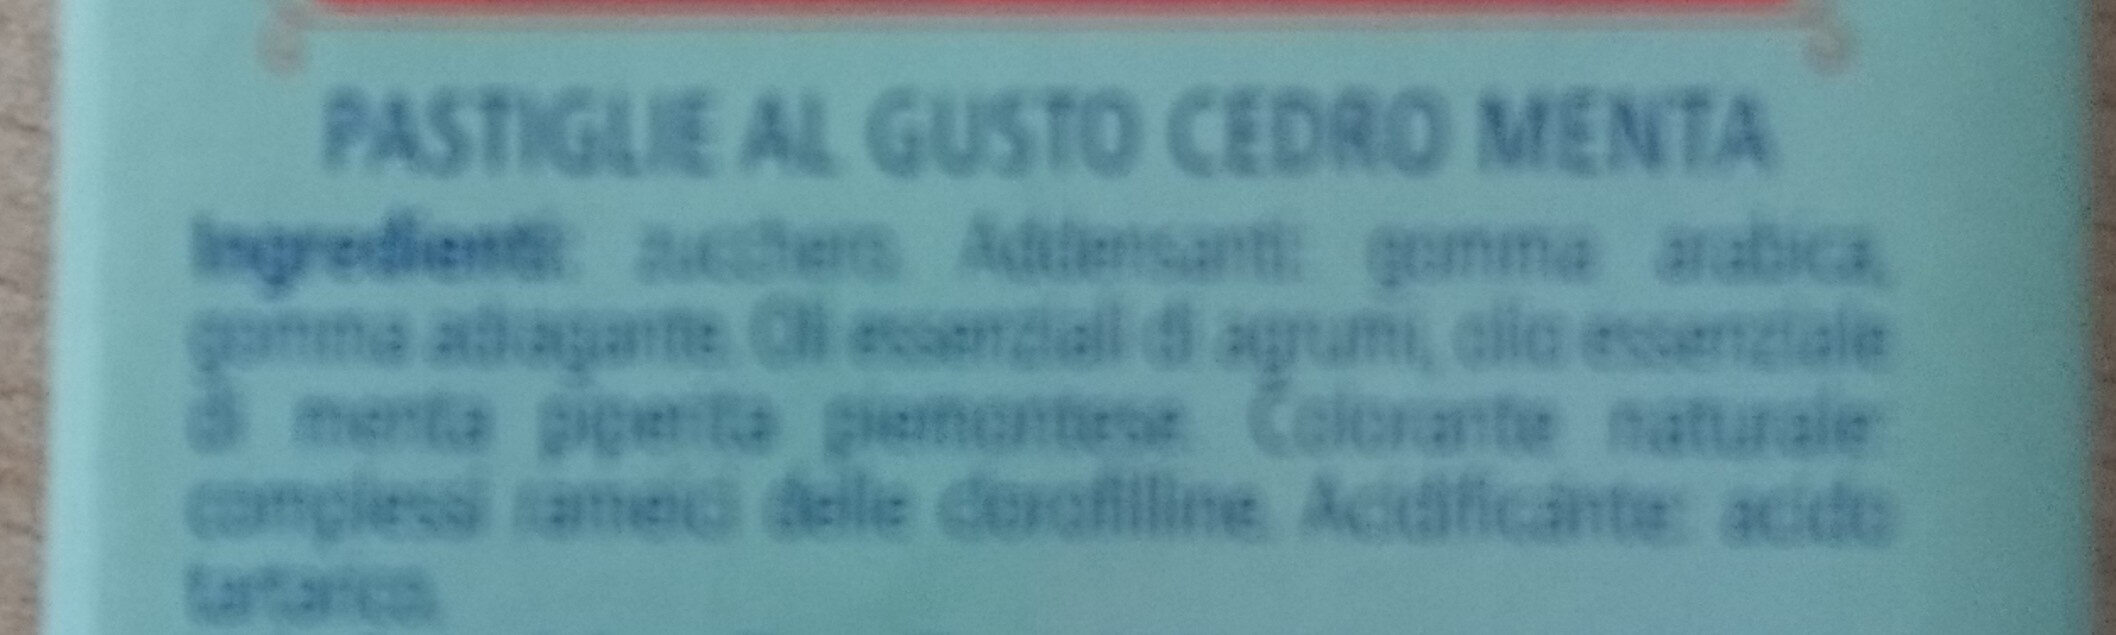 Pastiglie leone cedro menta - Ingredients - it